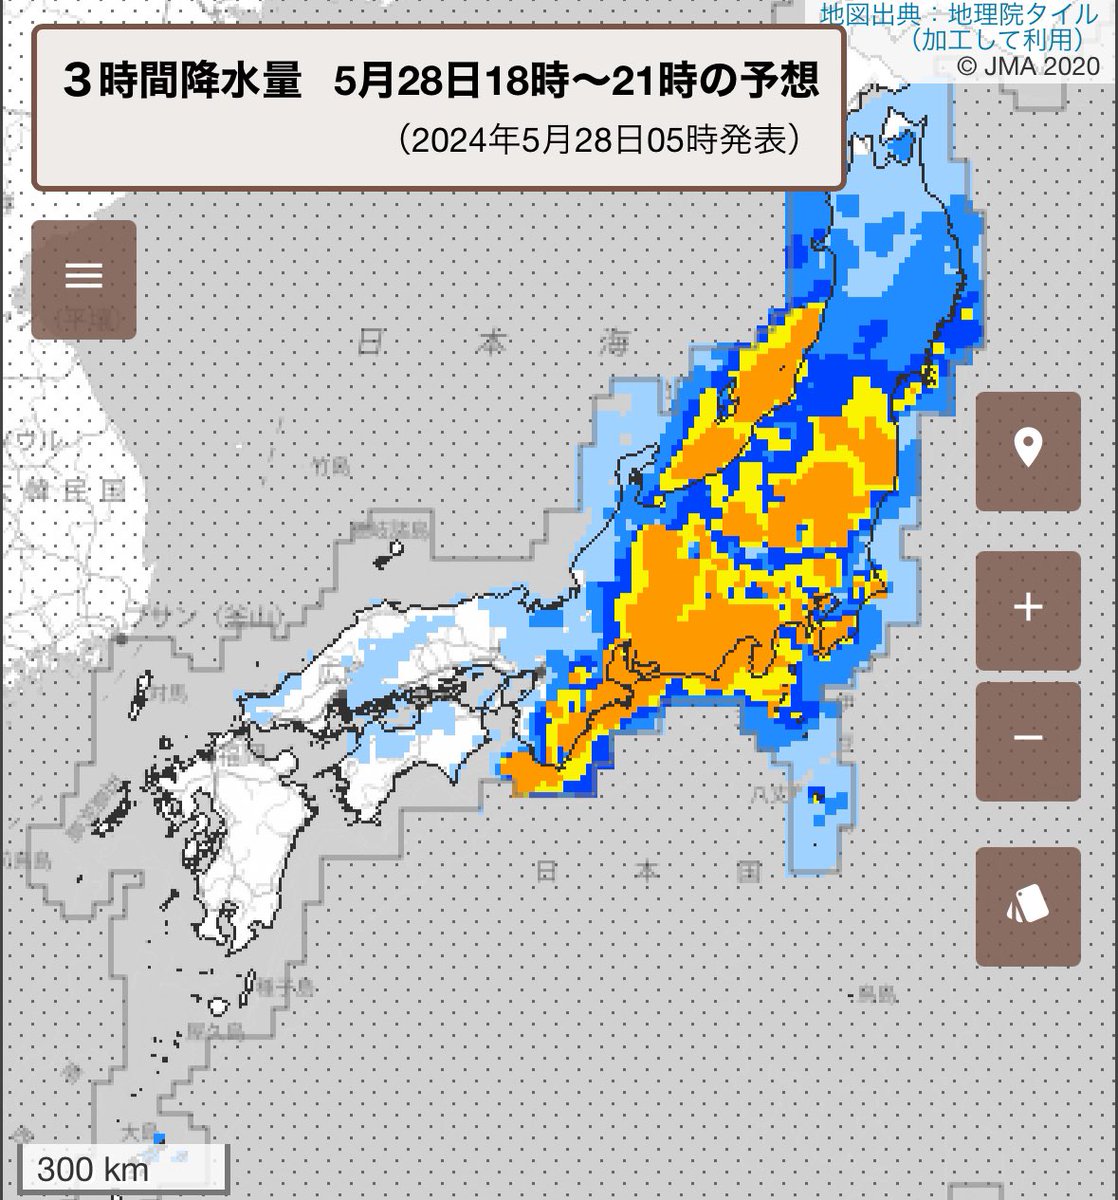 大雨にどうかお気をつけください。 南西諸島や西日本は28日は、東日本〜東北は29日にかけて大雨に。宮崎県・鹿児島県は28日日中にかけて、徳島県・高知県では28日日中、岐阜県・静岡県・愛知県は28日午後に線状降水帯が発生して大雨災害発生の危険度が急激に高まる可能性あり。水害に厳重に警戒を！！